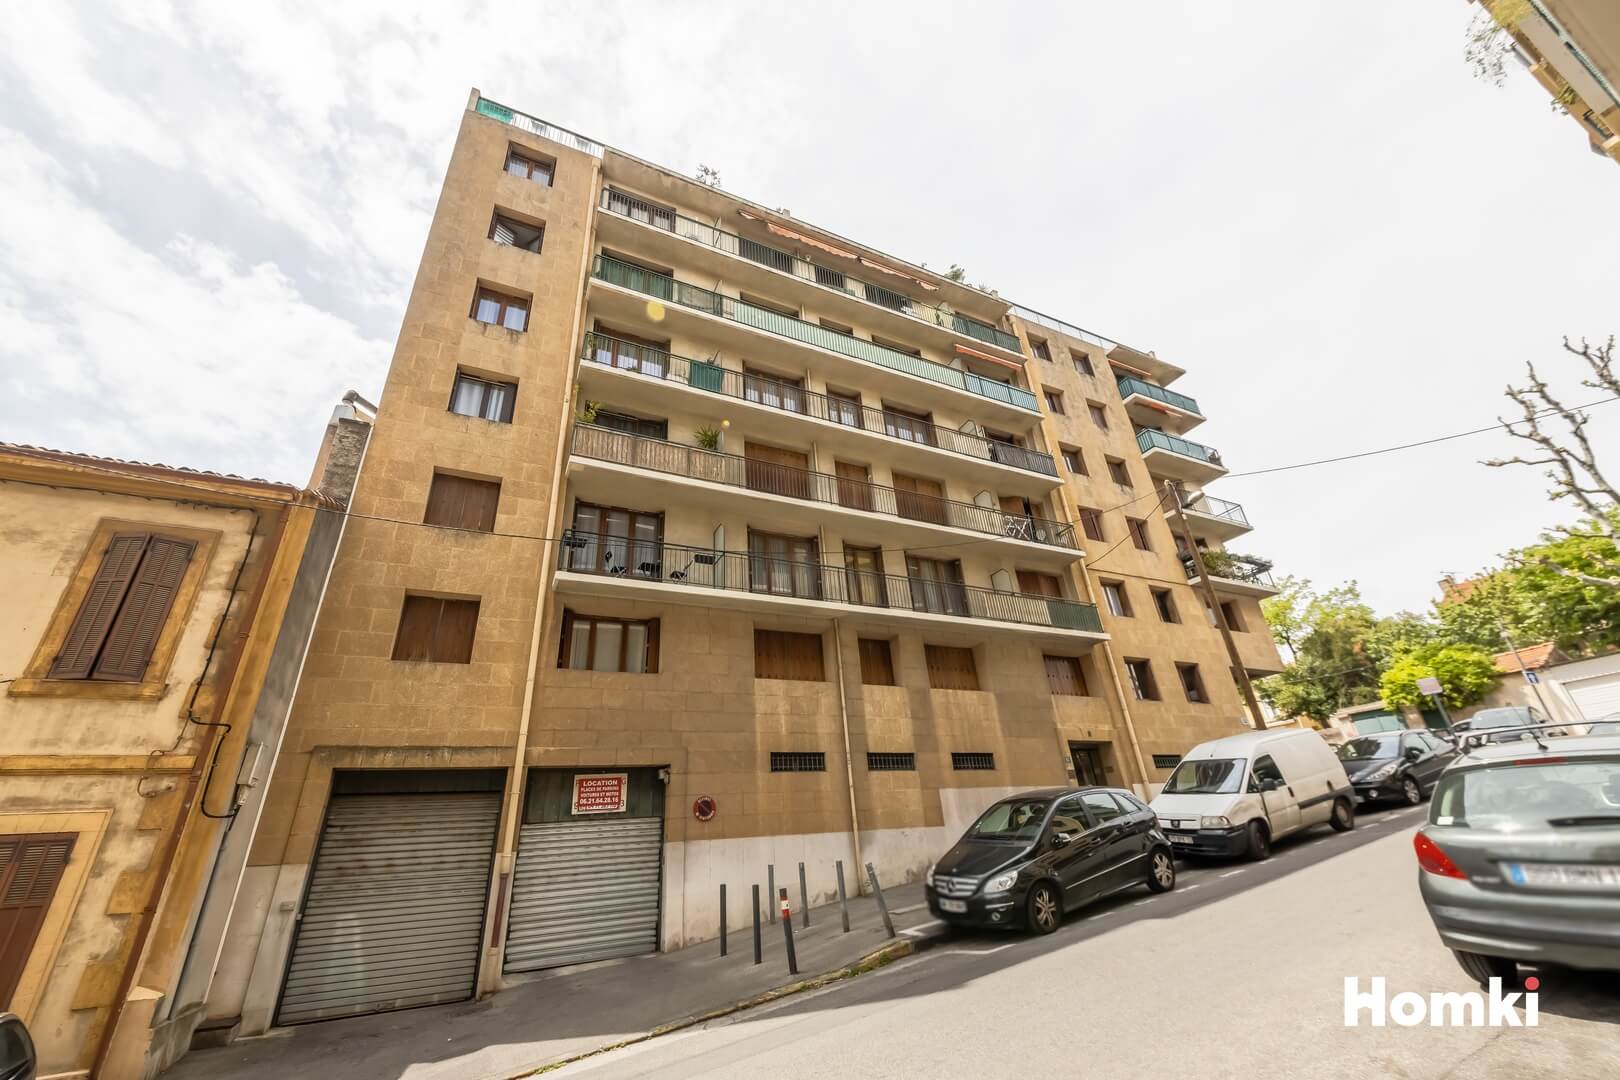 Homki - Vente Appartement  de 43.0 m² à Marseille 13013